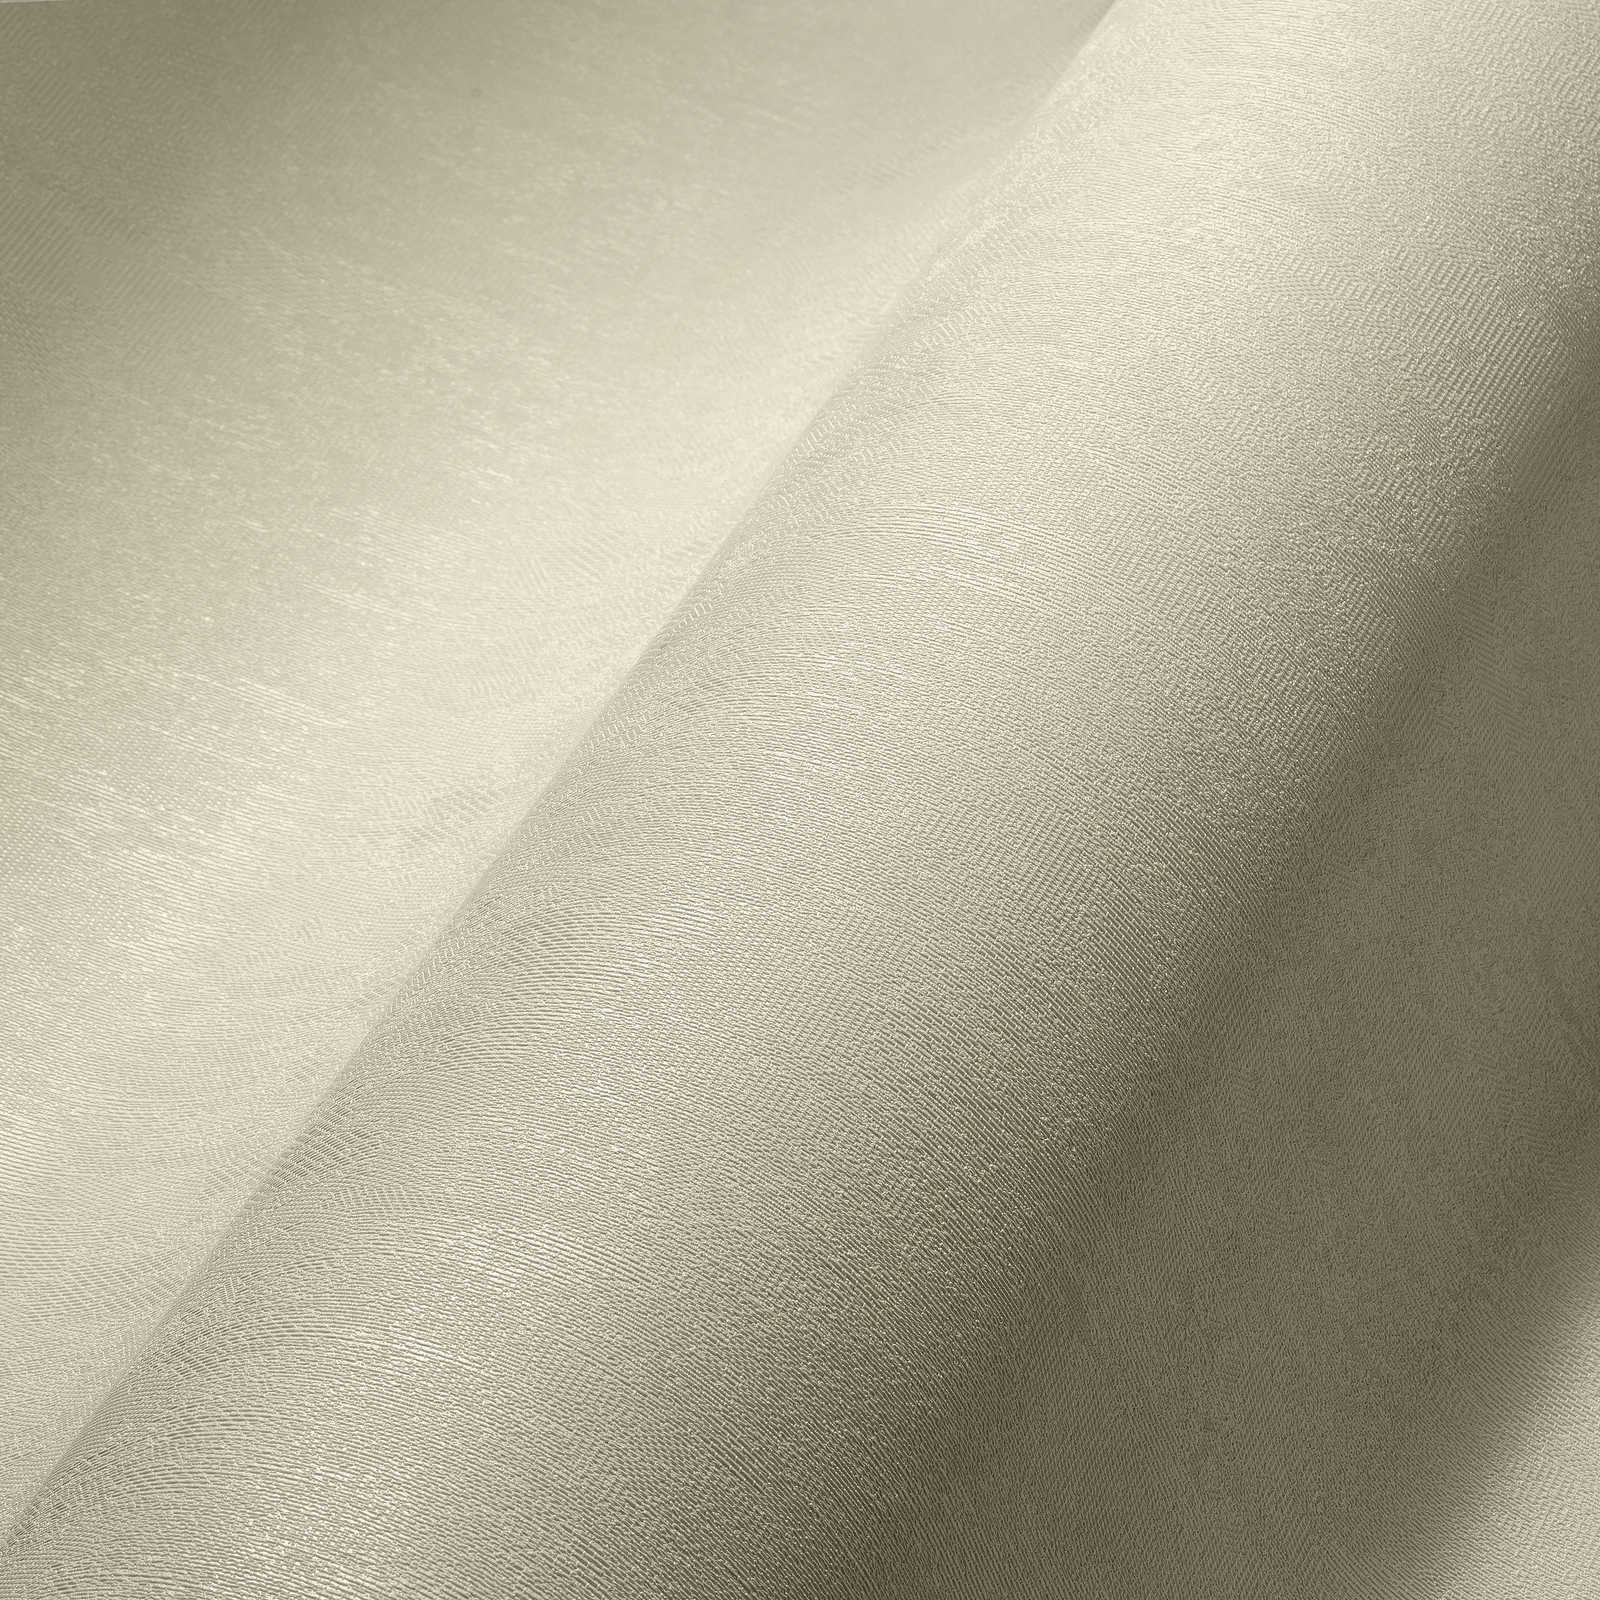             Carta da parati in tessuto non tessuto bianco crema a tinta unita con superficie strutturata
        